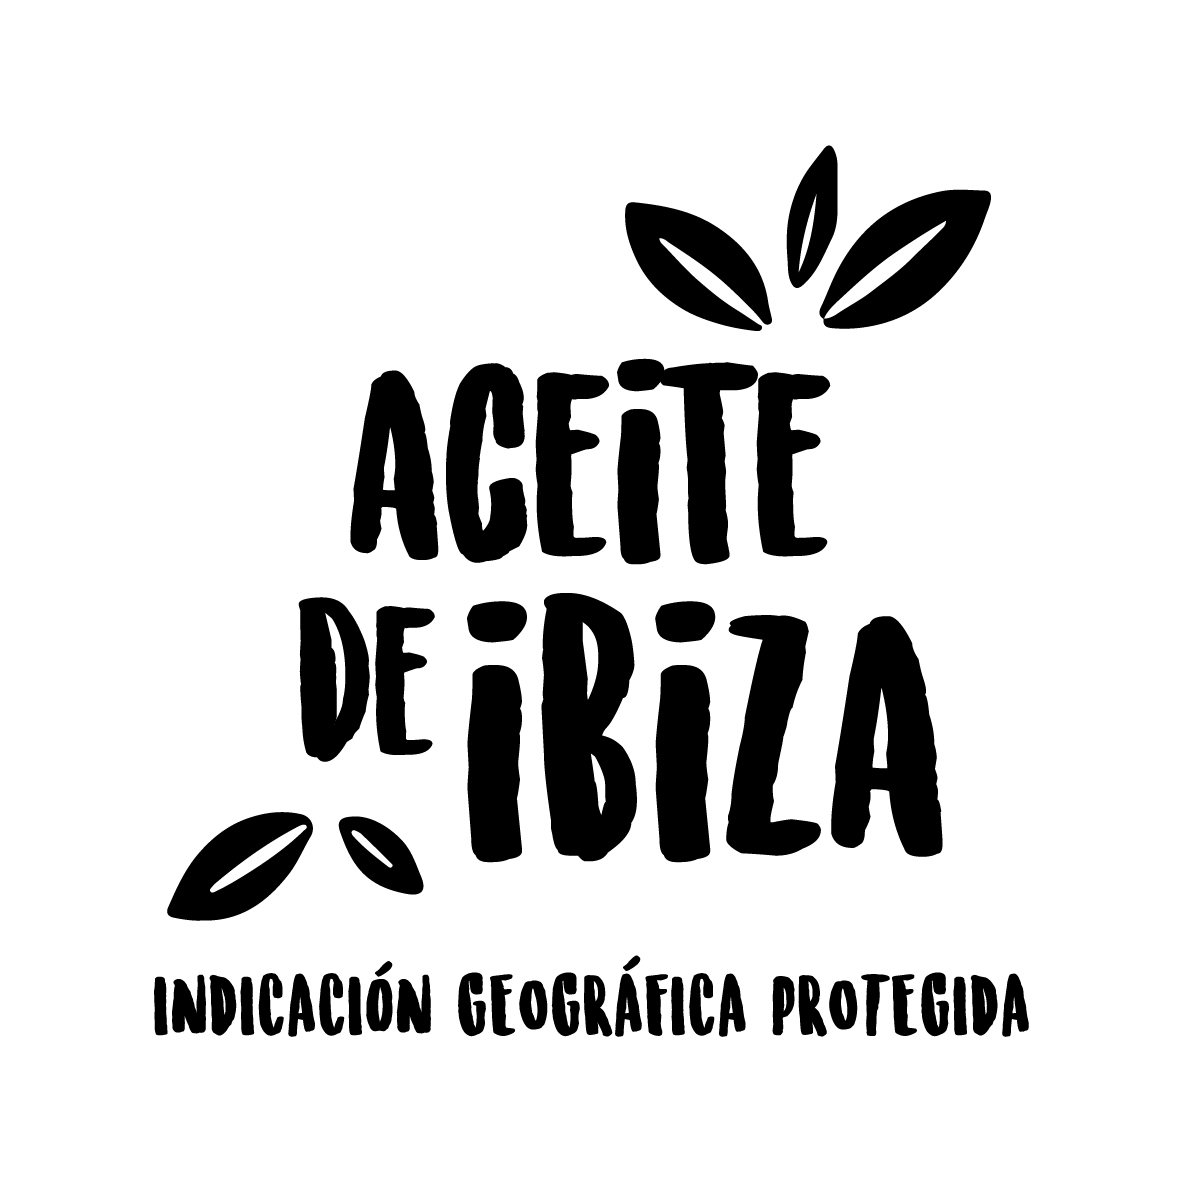 La IGP Aceite de Ibiza inicia su primera campaña de producción y elaboración - Noticias - Islas Baleares - Productos agroalimentarios, denominaciones de origen y gastronomía balear